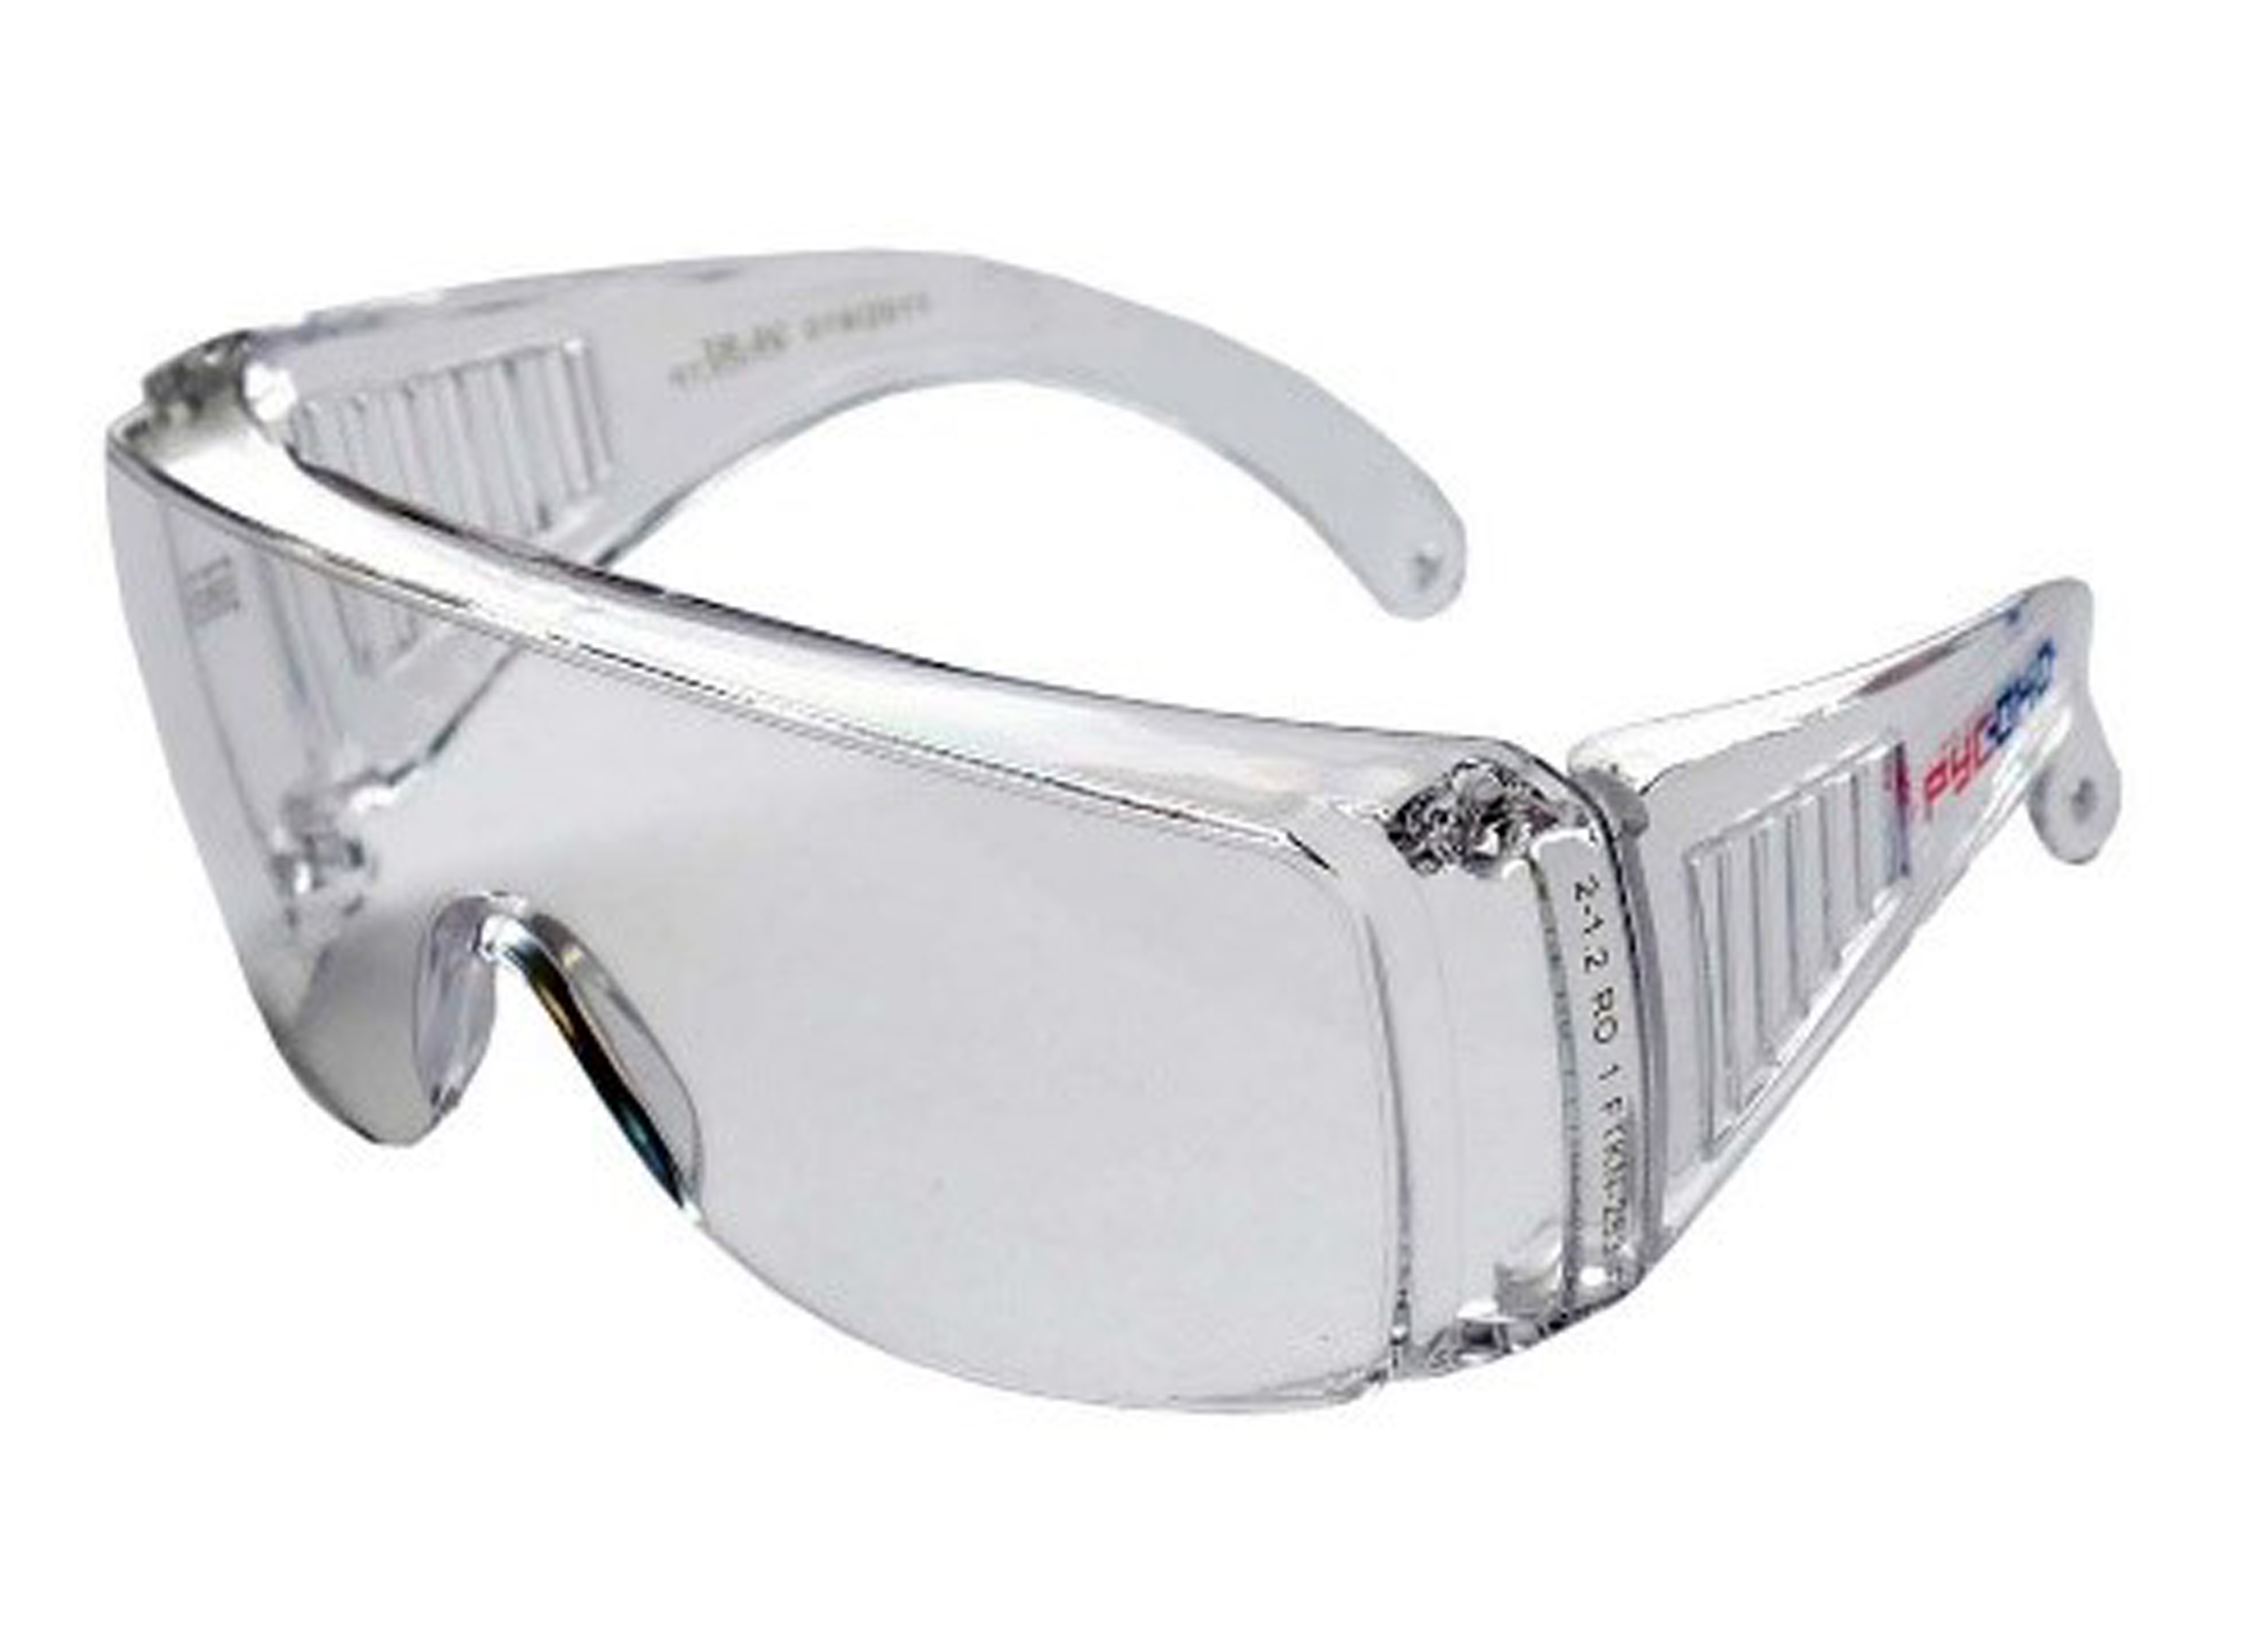 Очки защитные ударопрочные. Очки защитные открытые о55 Hammer Profi (PC) (15530). Очки защитные РУСОКО спектр прозрачные. Очки защитные открытые поликарбонатные прозрачные Исток (очк001). Защитные очки РУСОКО Альфа.